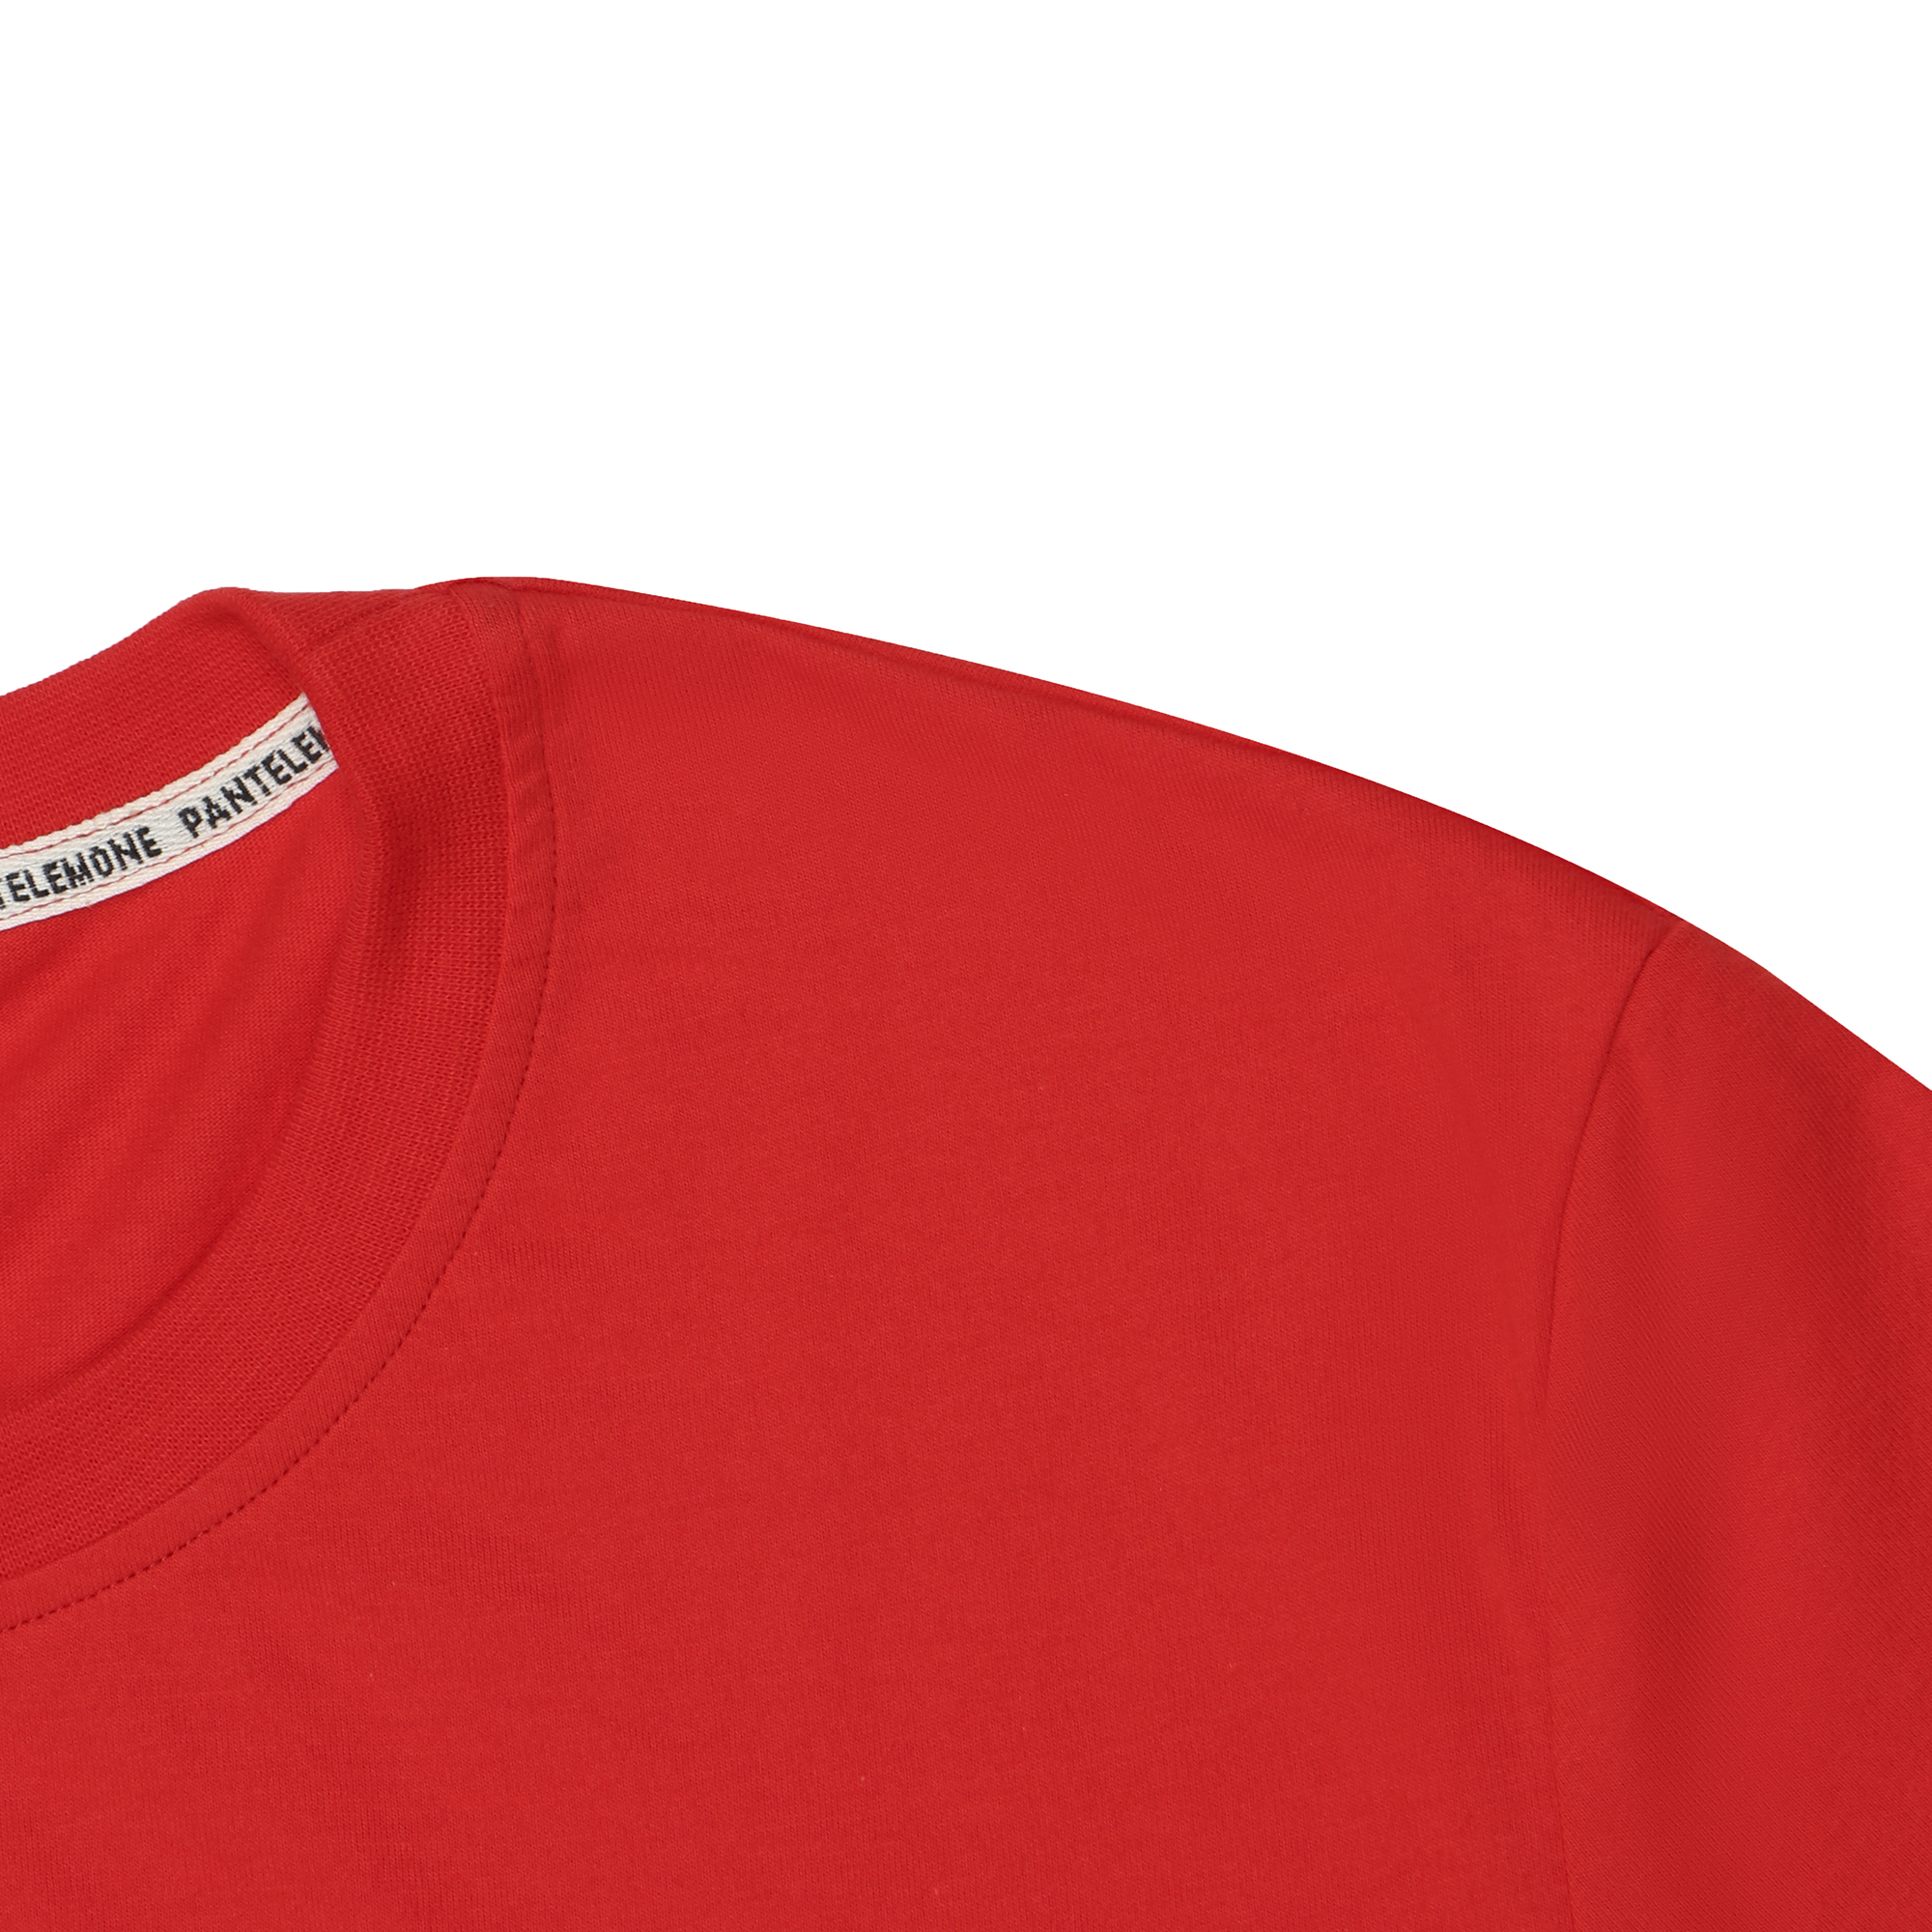 Мужская футболка Pantelemone MF-913 50 красная, цвет красный, размер 50 - фото 2